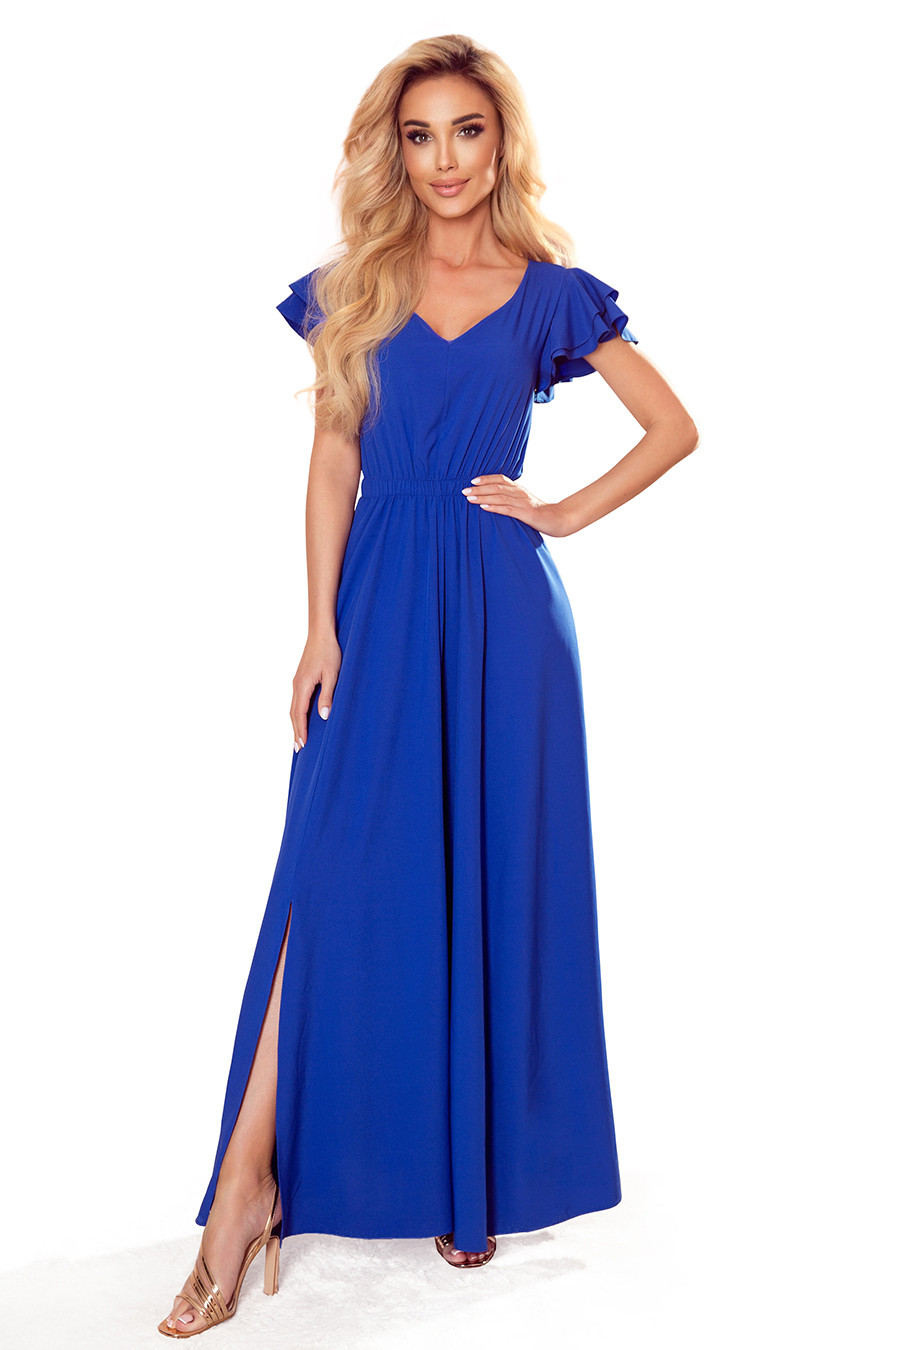 LIDIA - Dlouhé dámské šaty v chrpové barvě s výstřihem a volánky 310-3 S